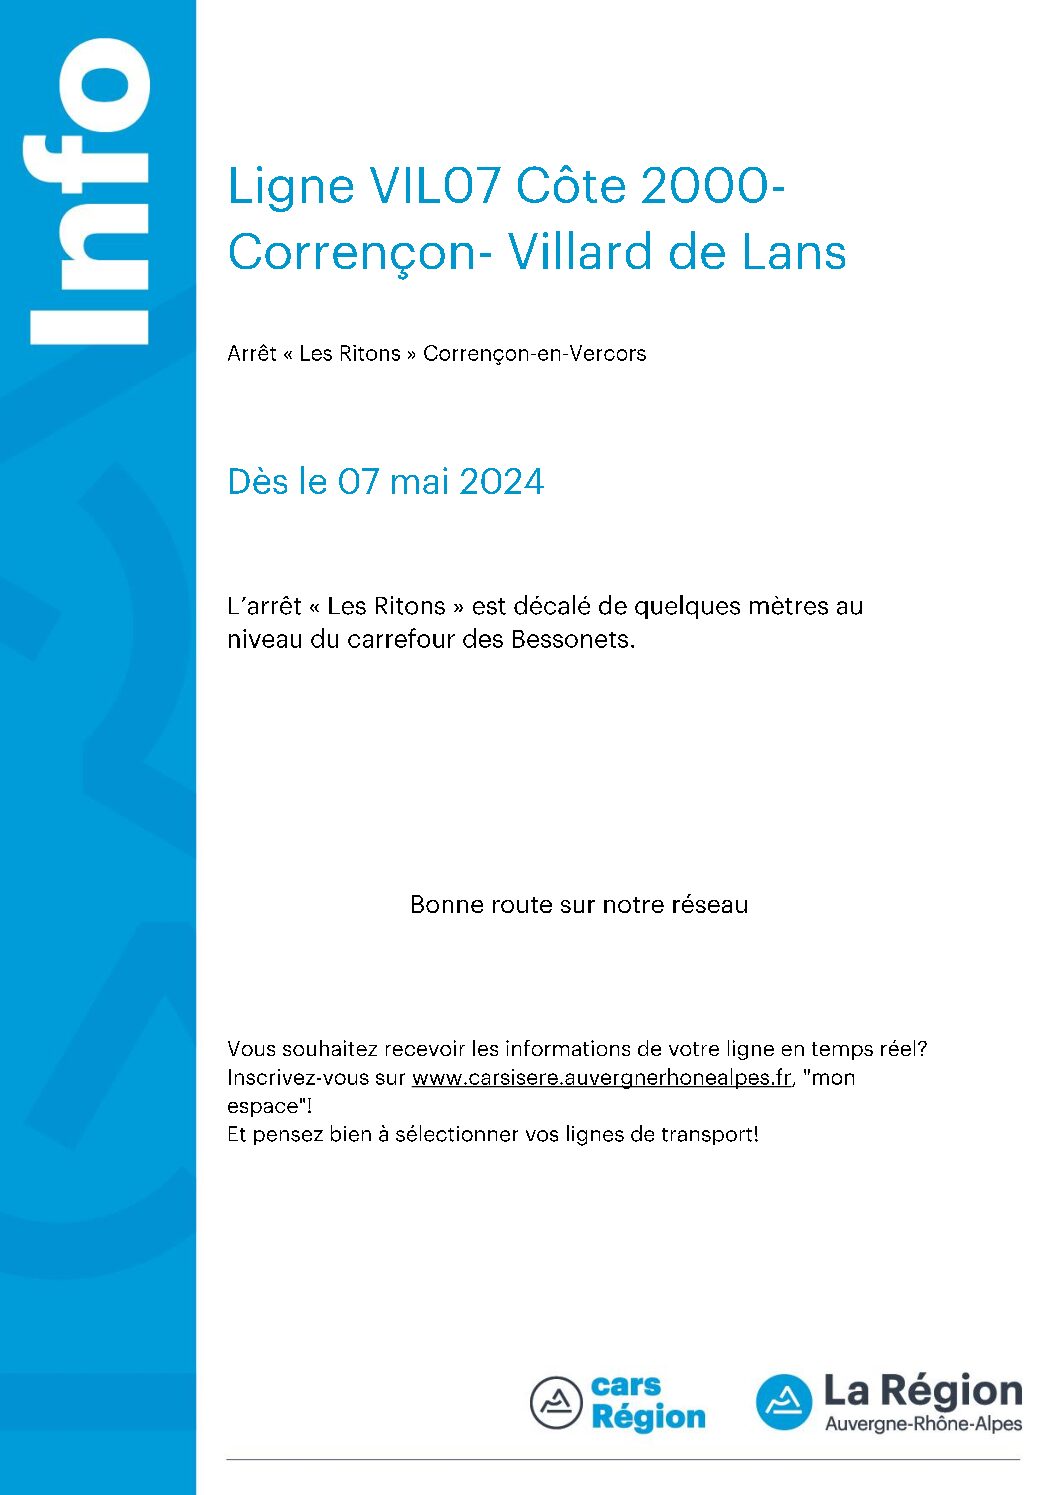 Vil07 Côte 2000 – Corrençon-villard de lans